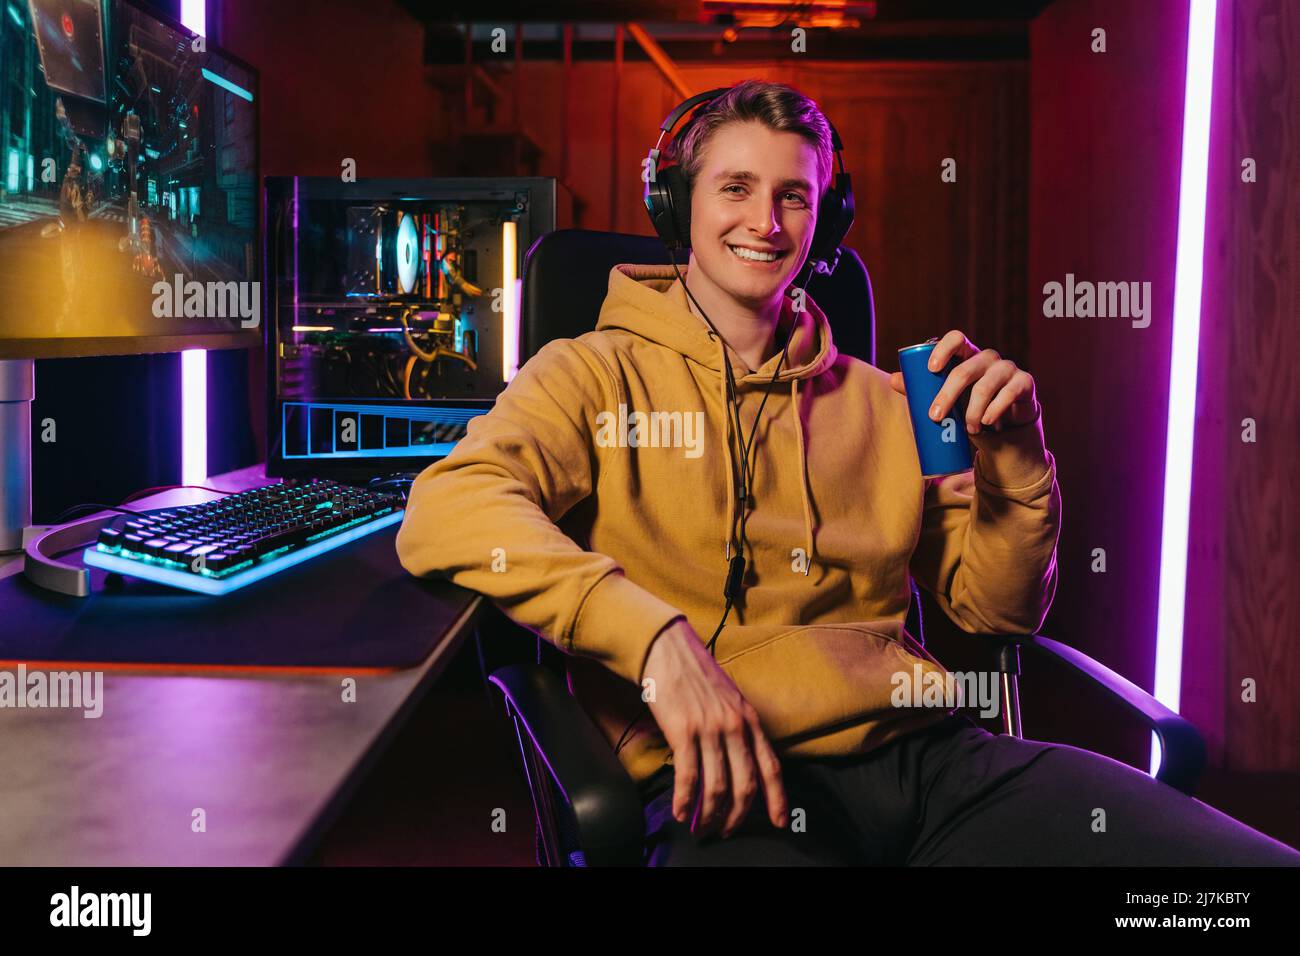 Porträt eines lächelnden Pro-Gamer, der ein Headset trägt, die Kamera anschaut, das Energie-Koffein dink hält, auf einem Spielstuhl in der Nähe eines professionellen Gaming-Setups sitzt. Cyber-Sportler spielen Shooter Computerspiel Stockfoto